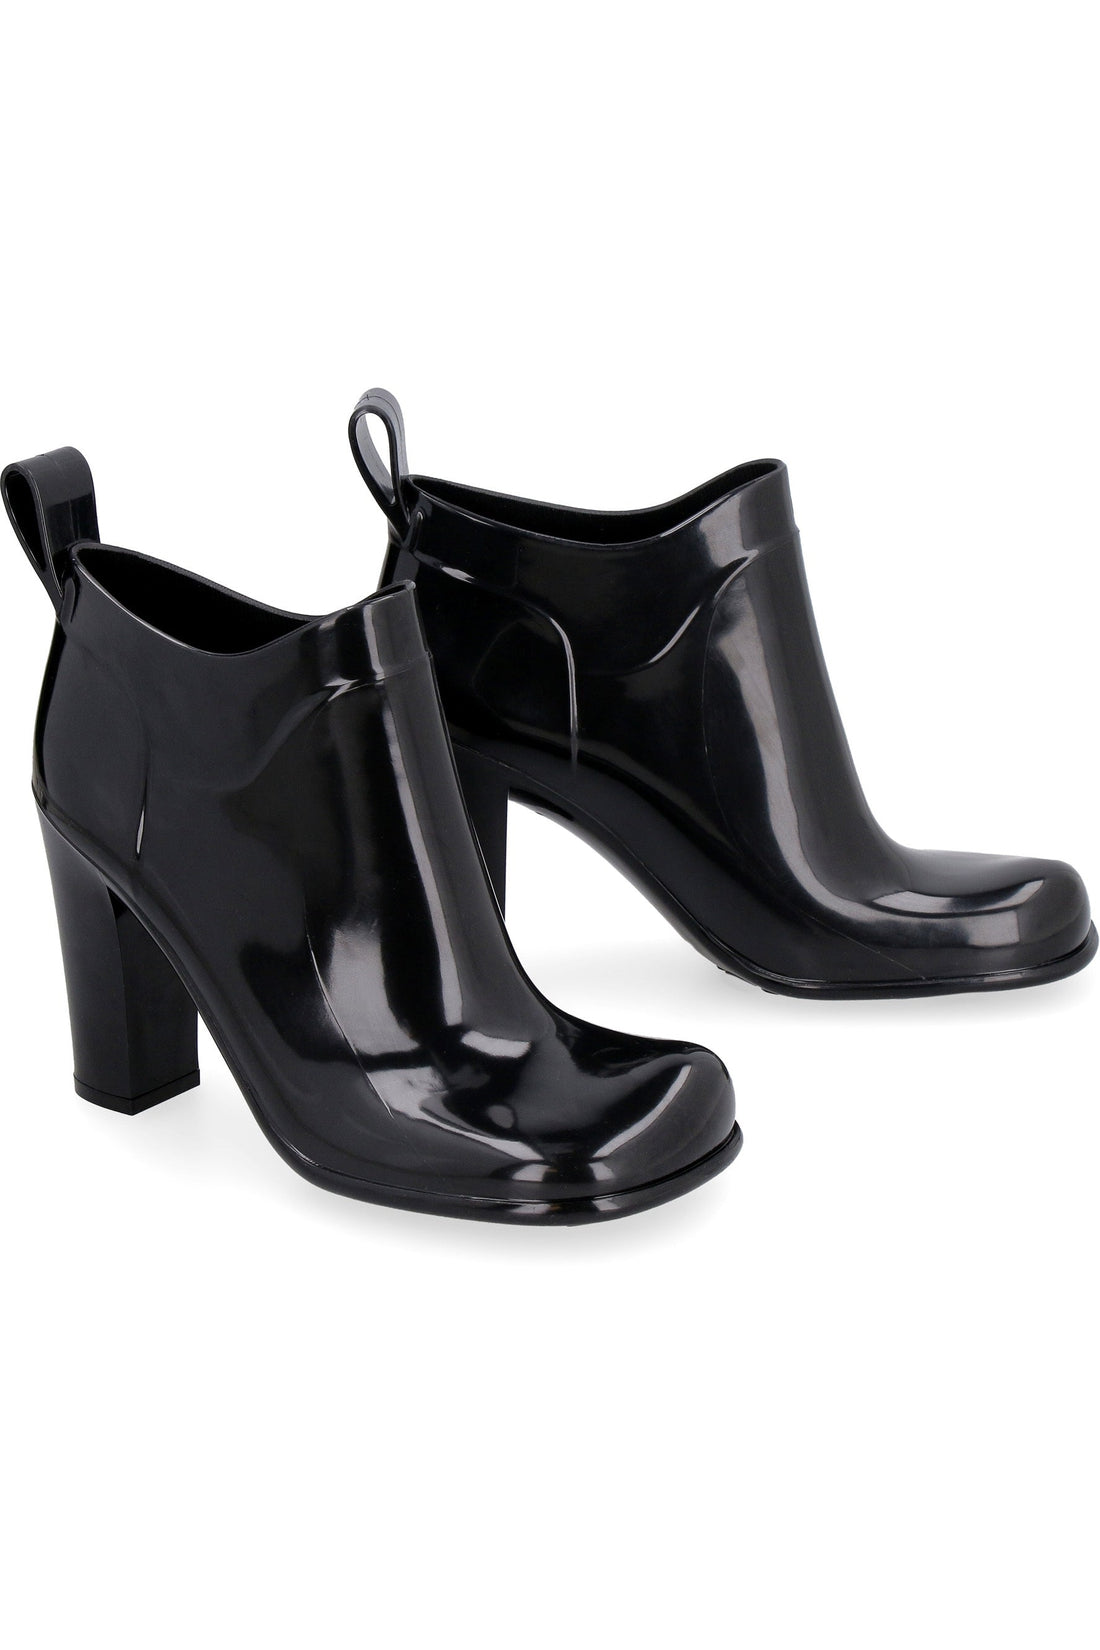 Bottega Veneta-OUTLET-SALE-Shine rubber boots-ARCHIVIST